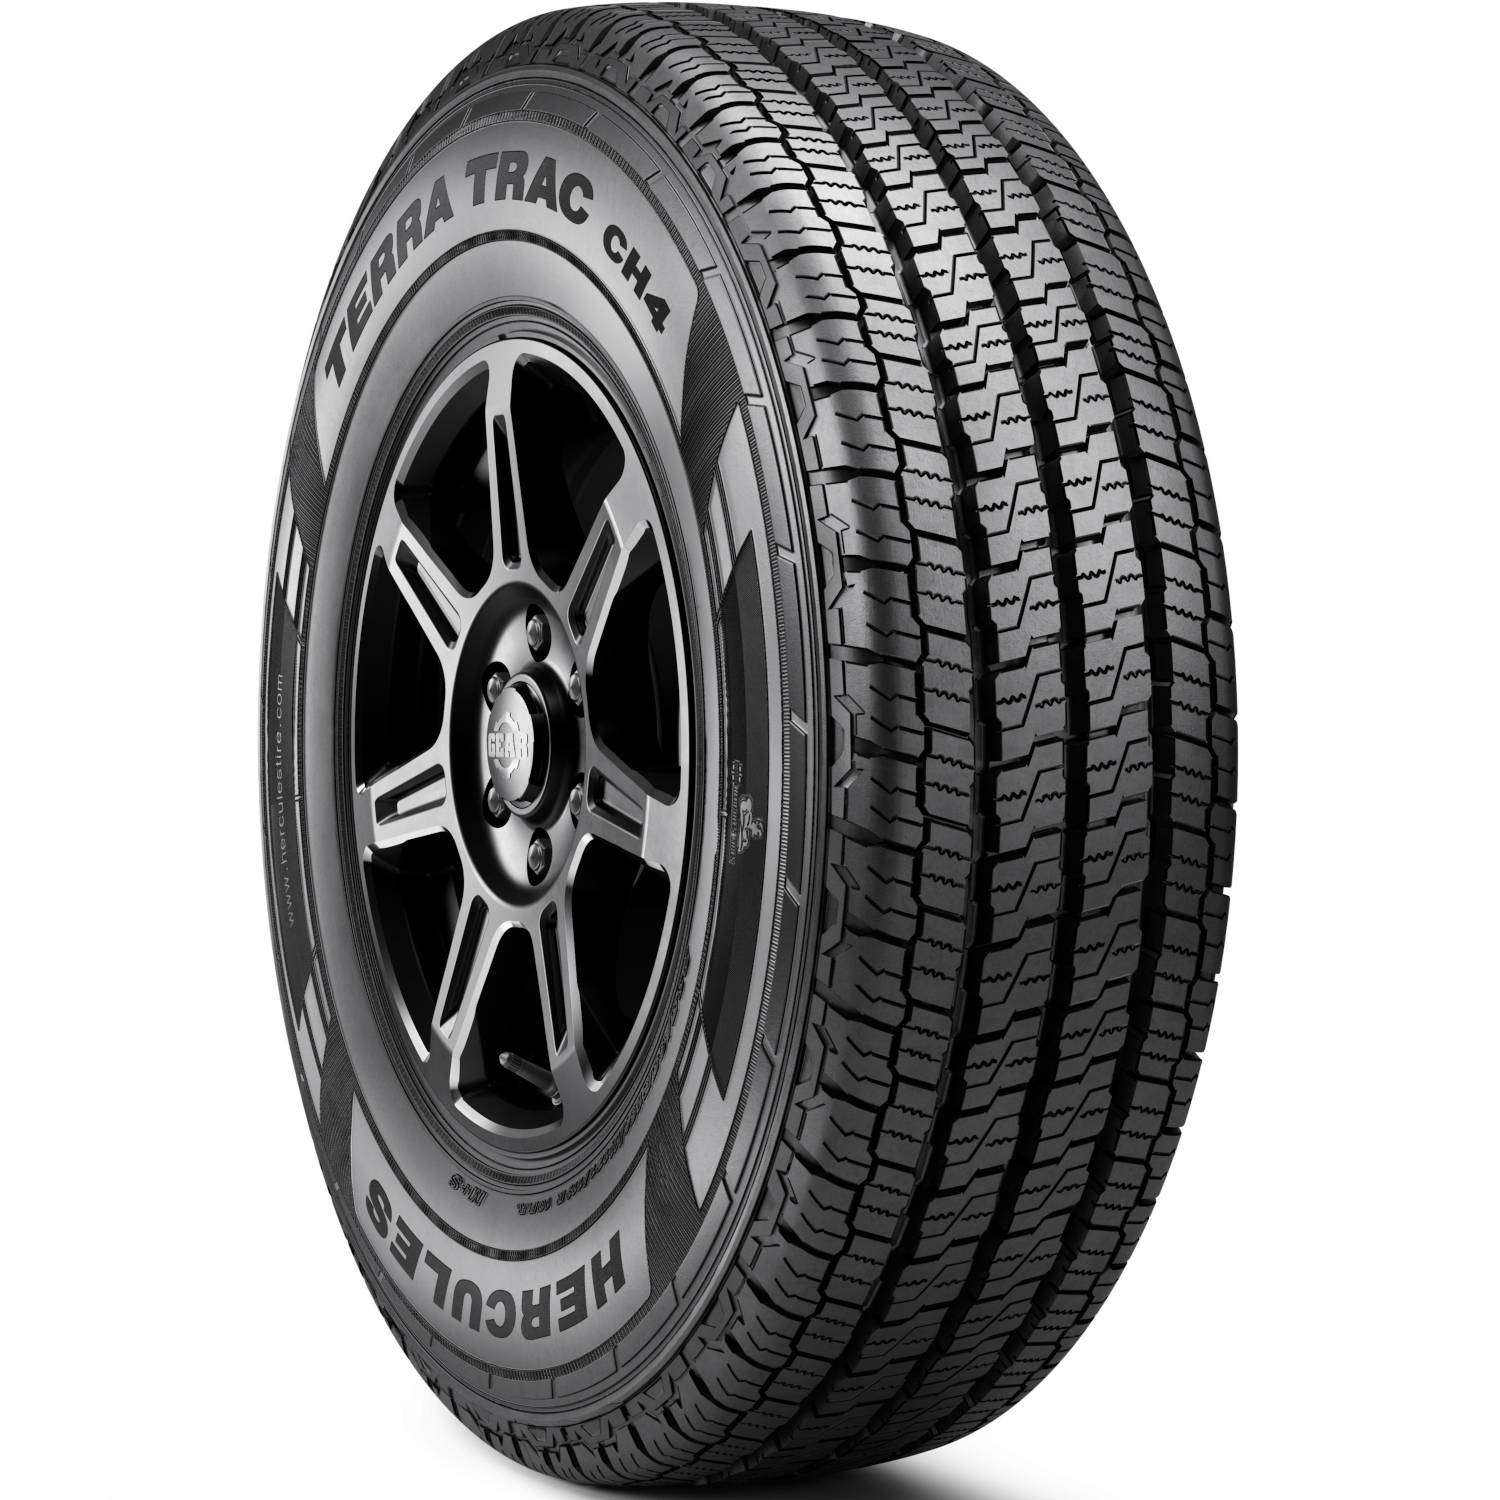 HERCULES TERRA TRAC CH4 185/60R15 (23.7X7.3R 15) Tires